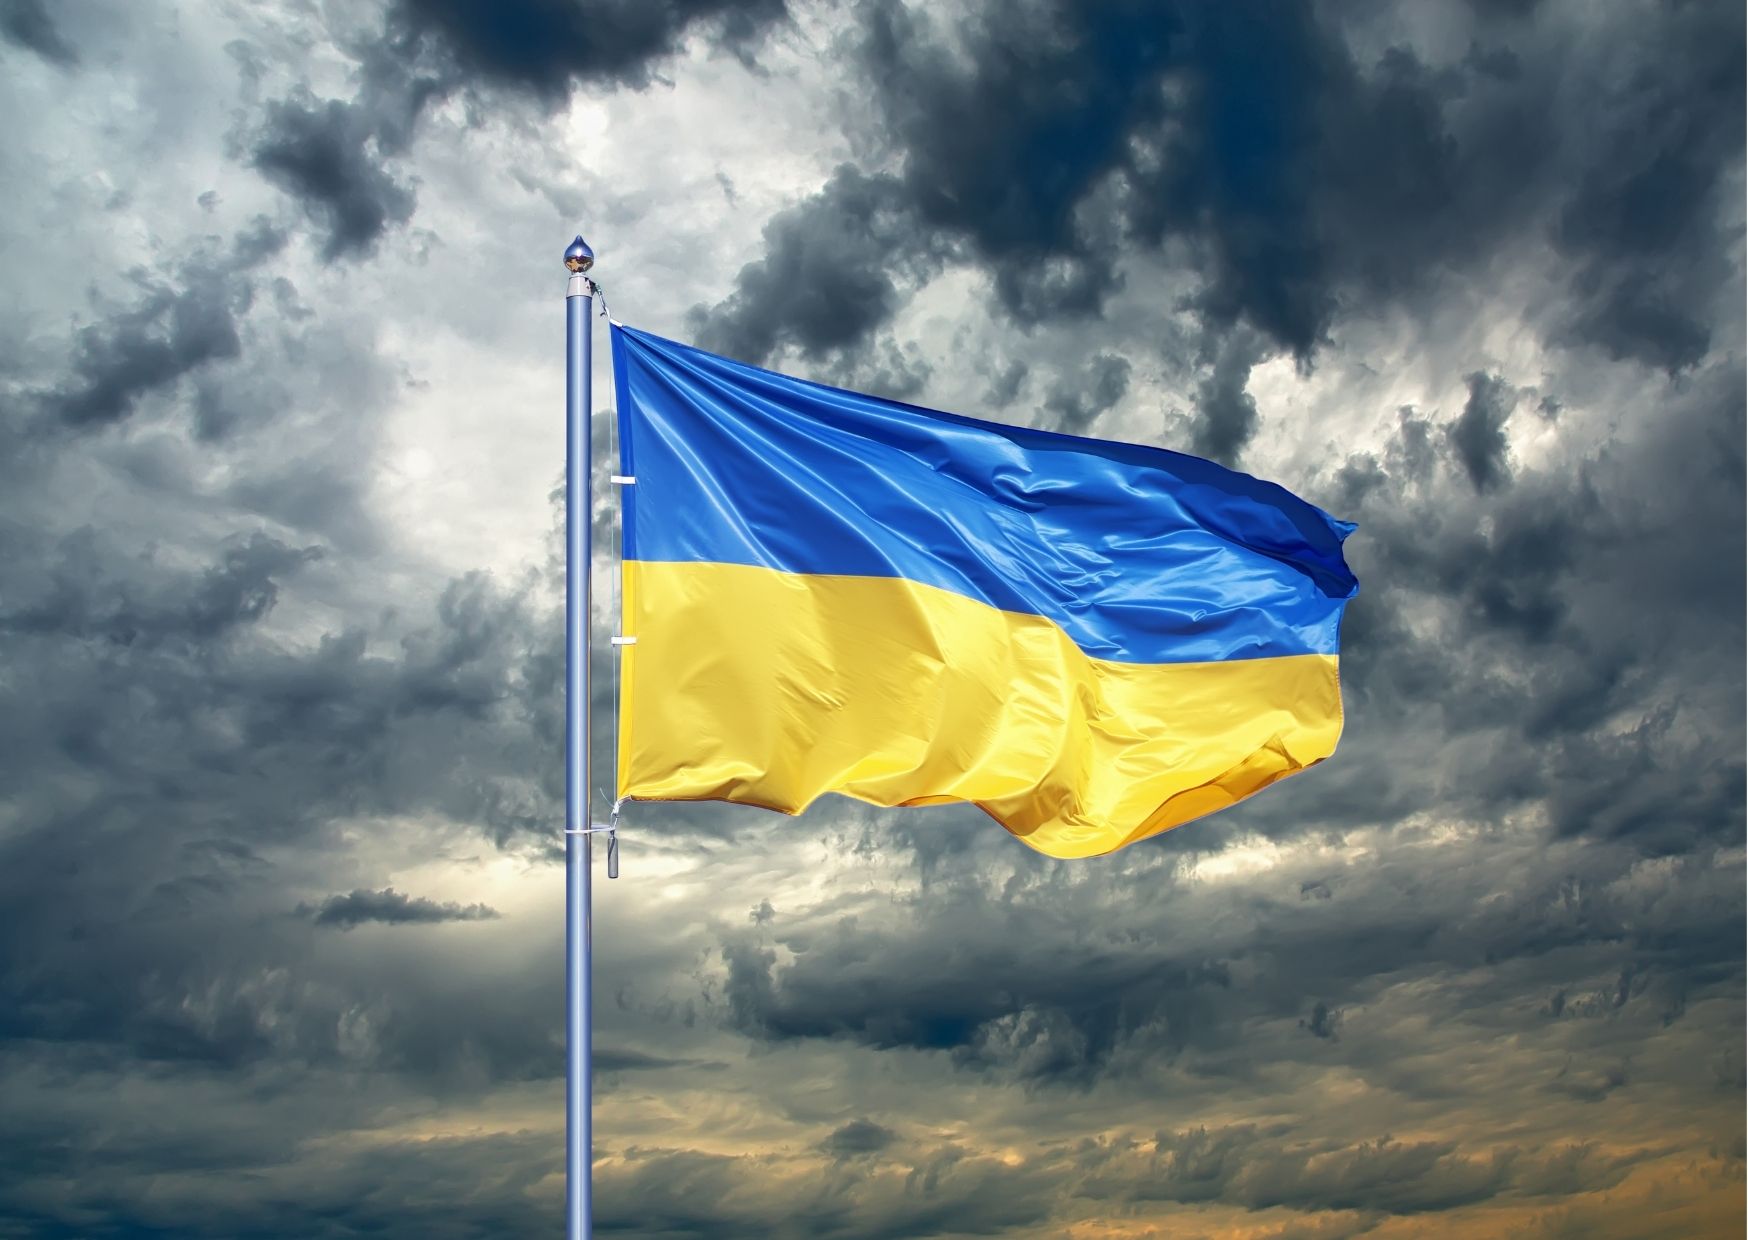 Specustawa dotycząca pomocy obywatelom Ukrainy – odpowiedzi na pytania (cz. 1)